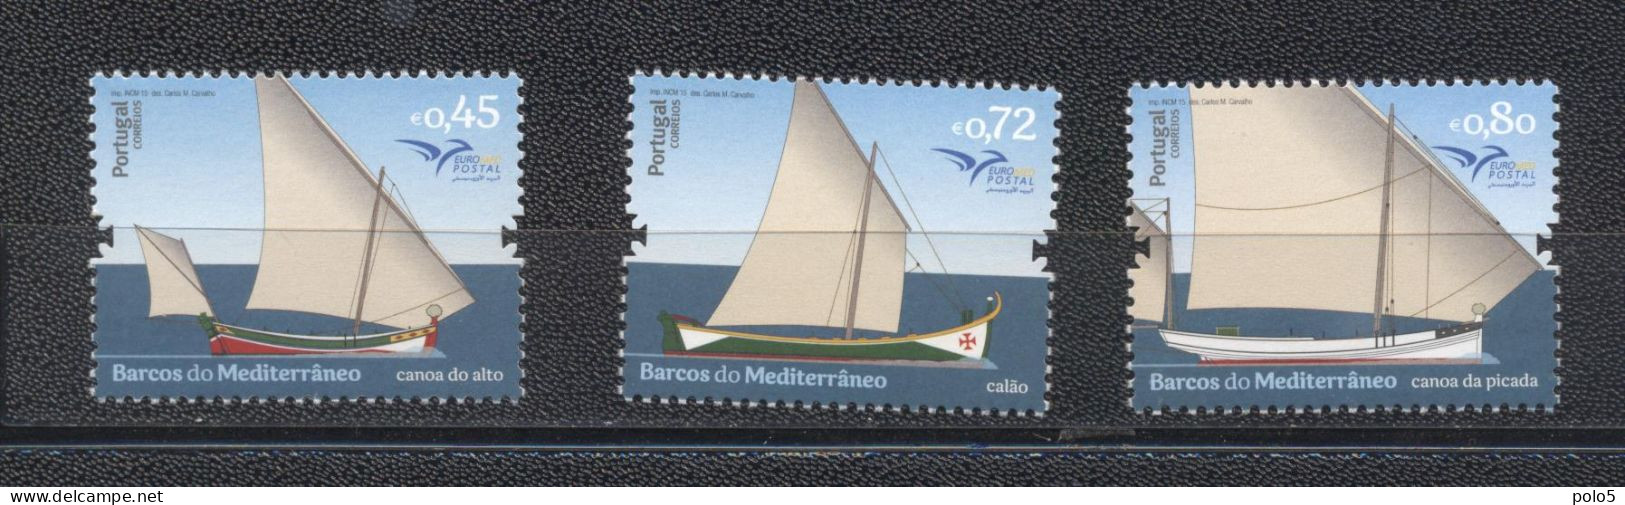 Portugal 2015-Euromed: Boats Of The Mediterranean Set (3v) - Unused Stamps